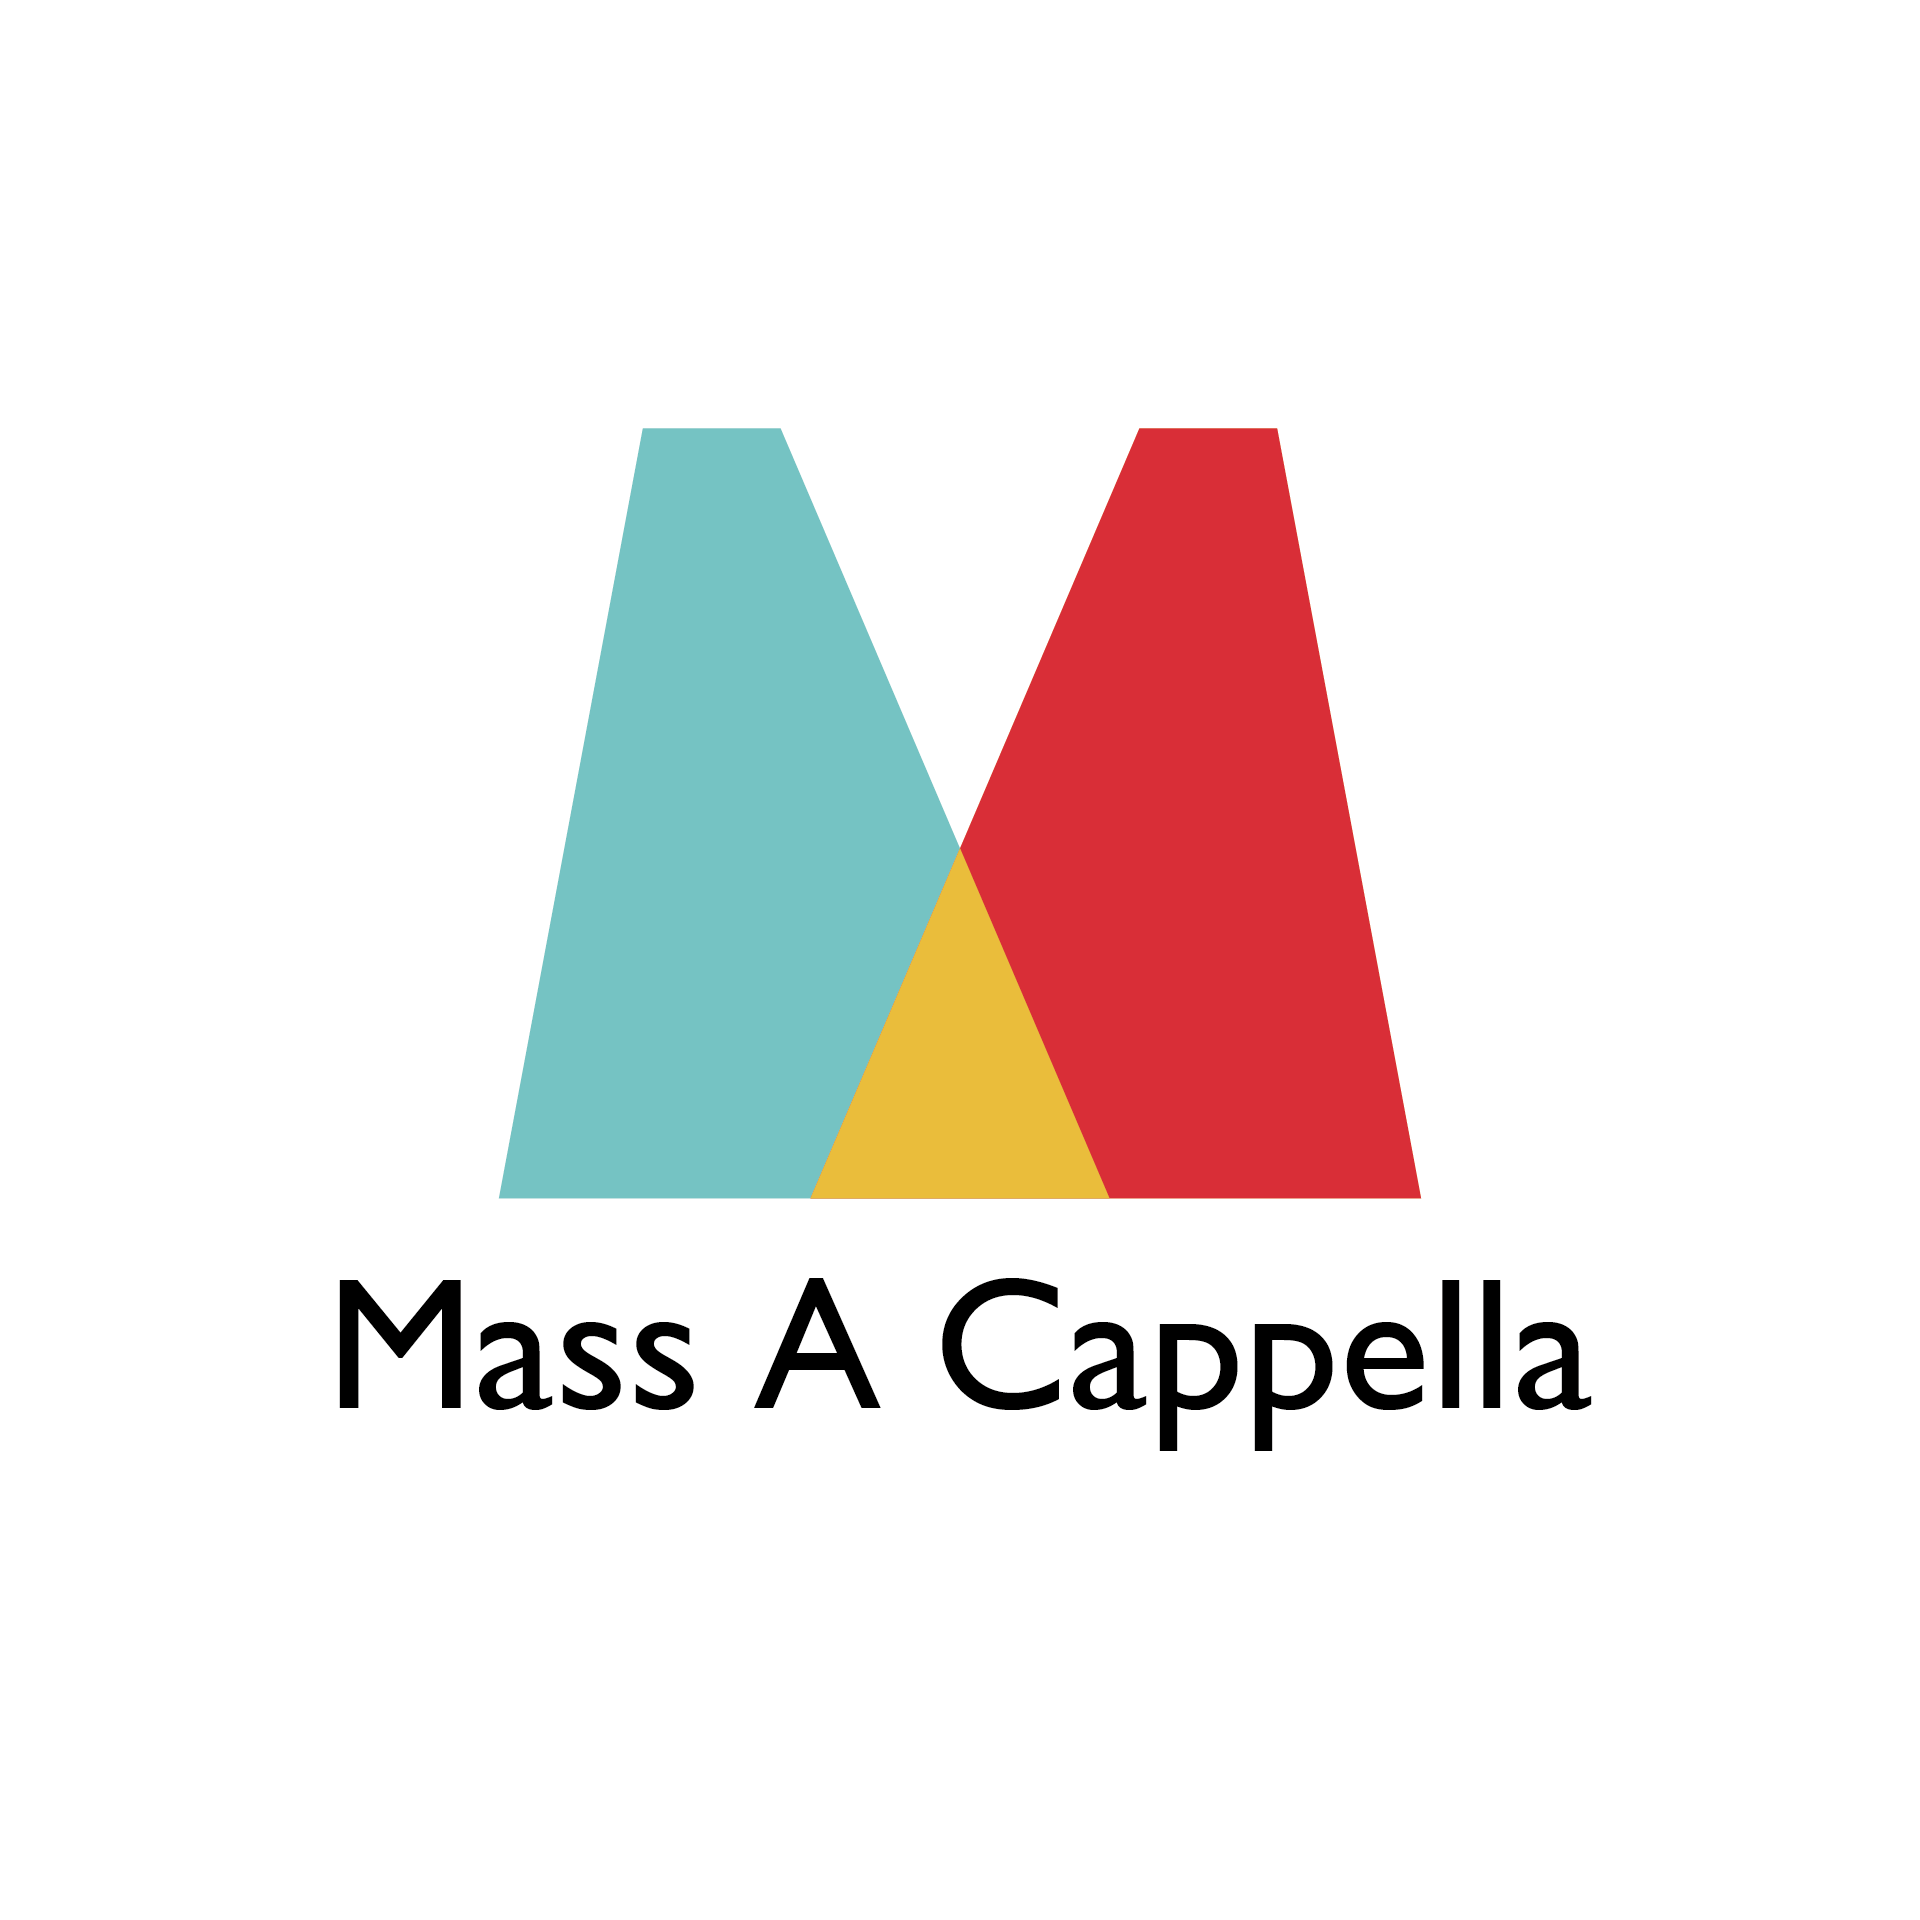 Mass A Cappella